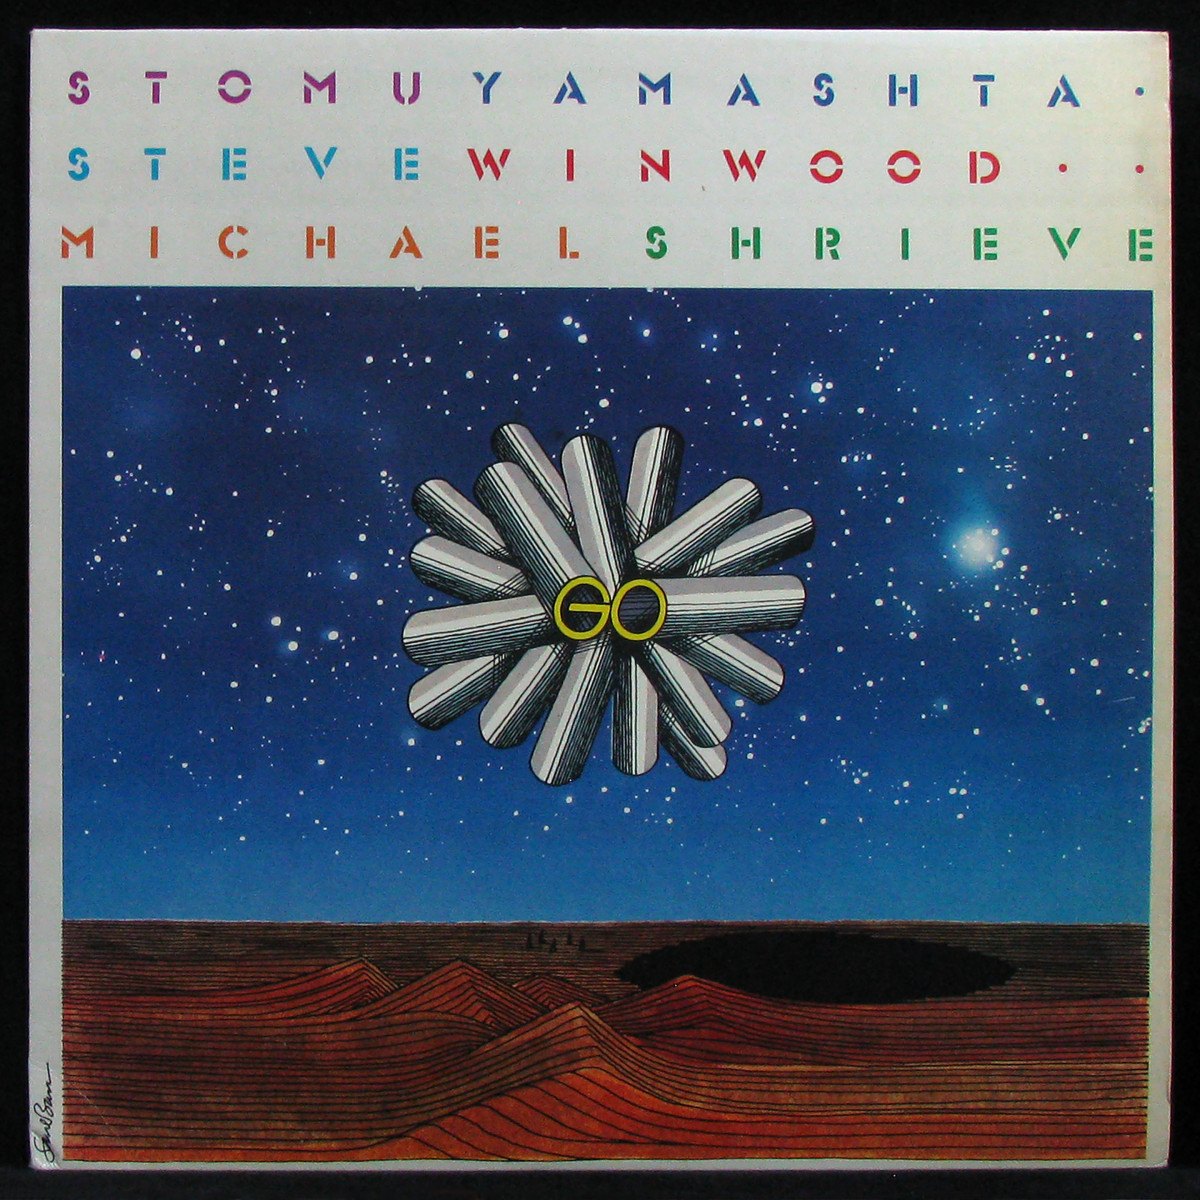 LP Stomu Yamashta / Steve Winwood / Michael Shrieve — Go фото